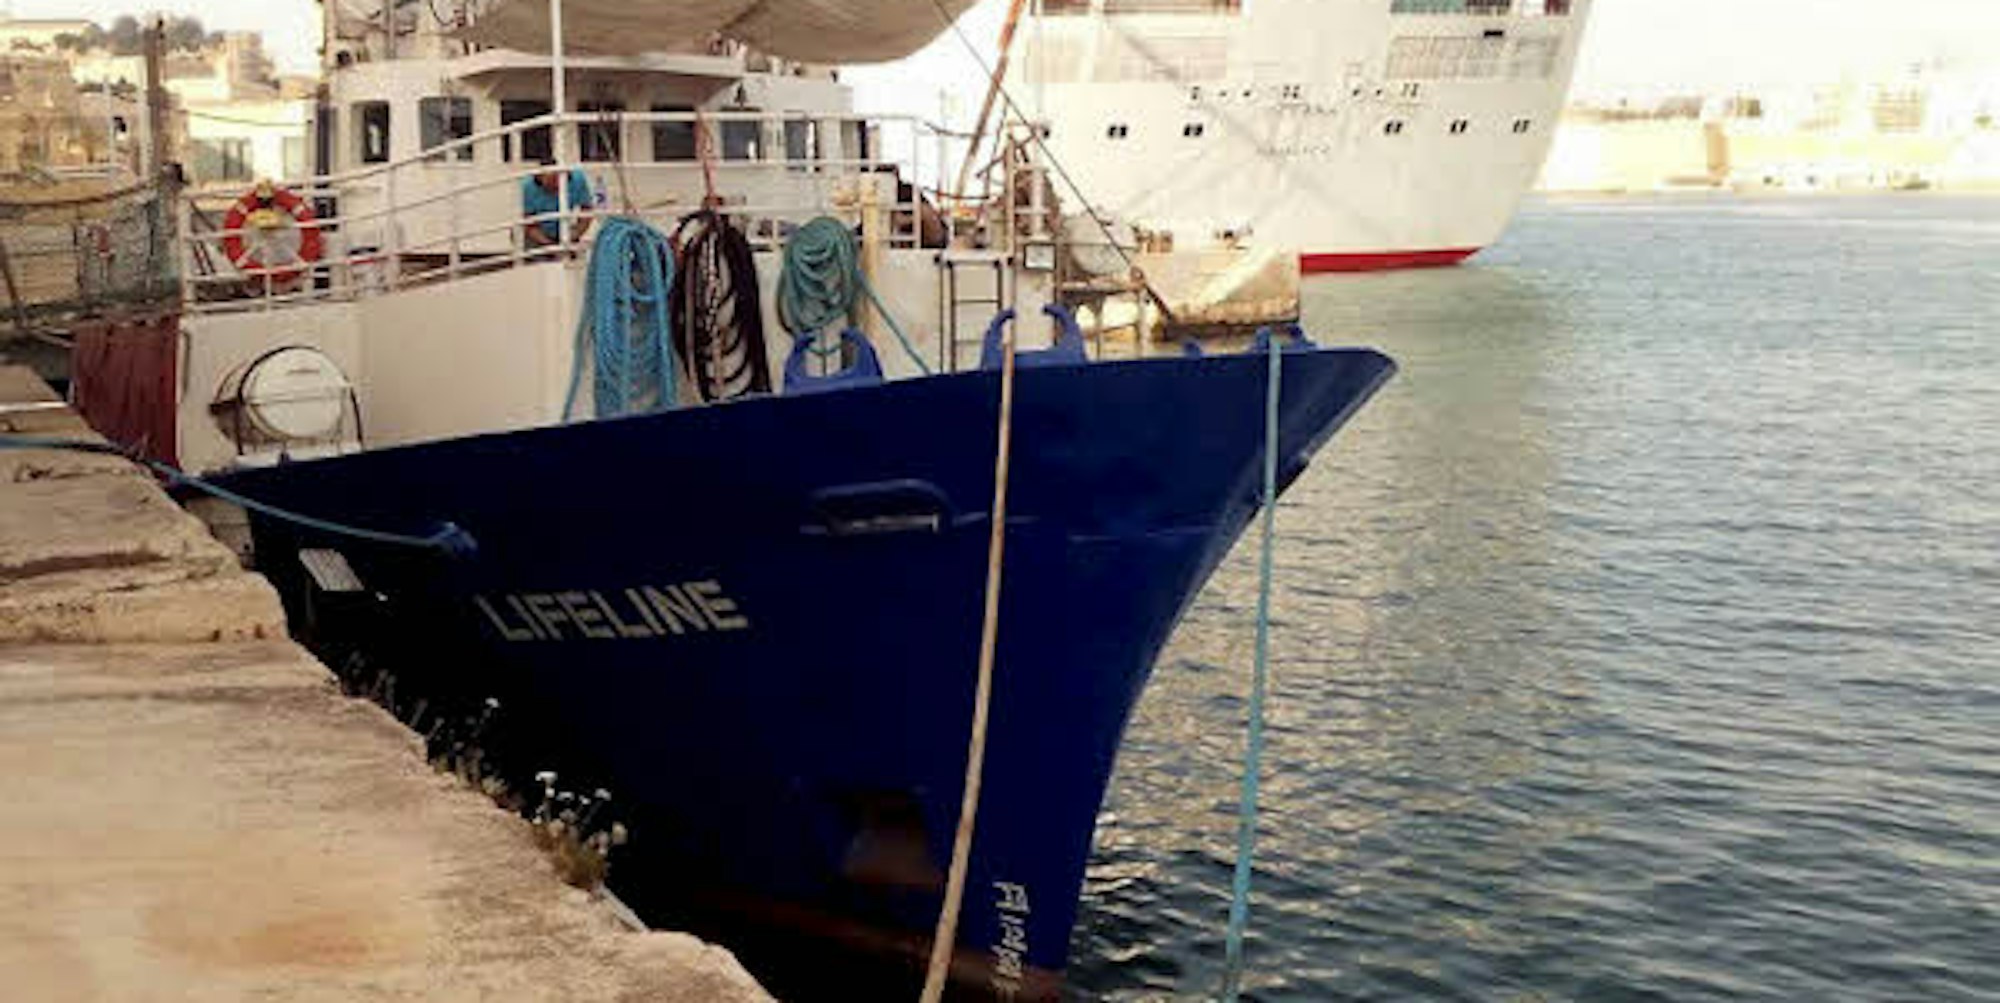 Seit einem Jahr liegt die „Lifeline“ im Hafen des maltesischen Valletta, wo auch Kreuzfahrtschiffe haltmachen. 